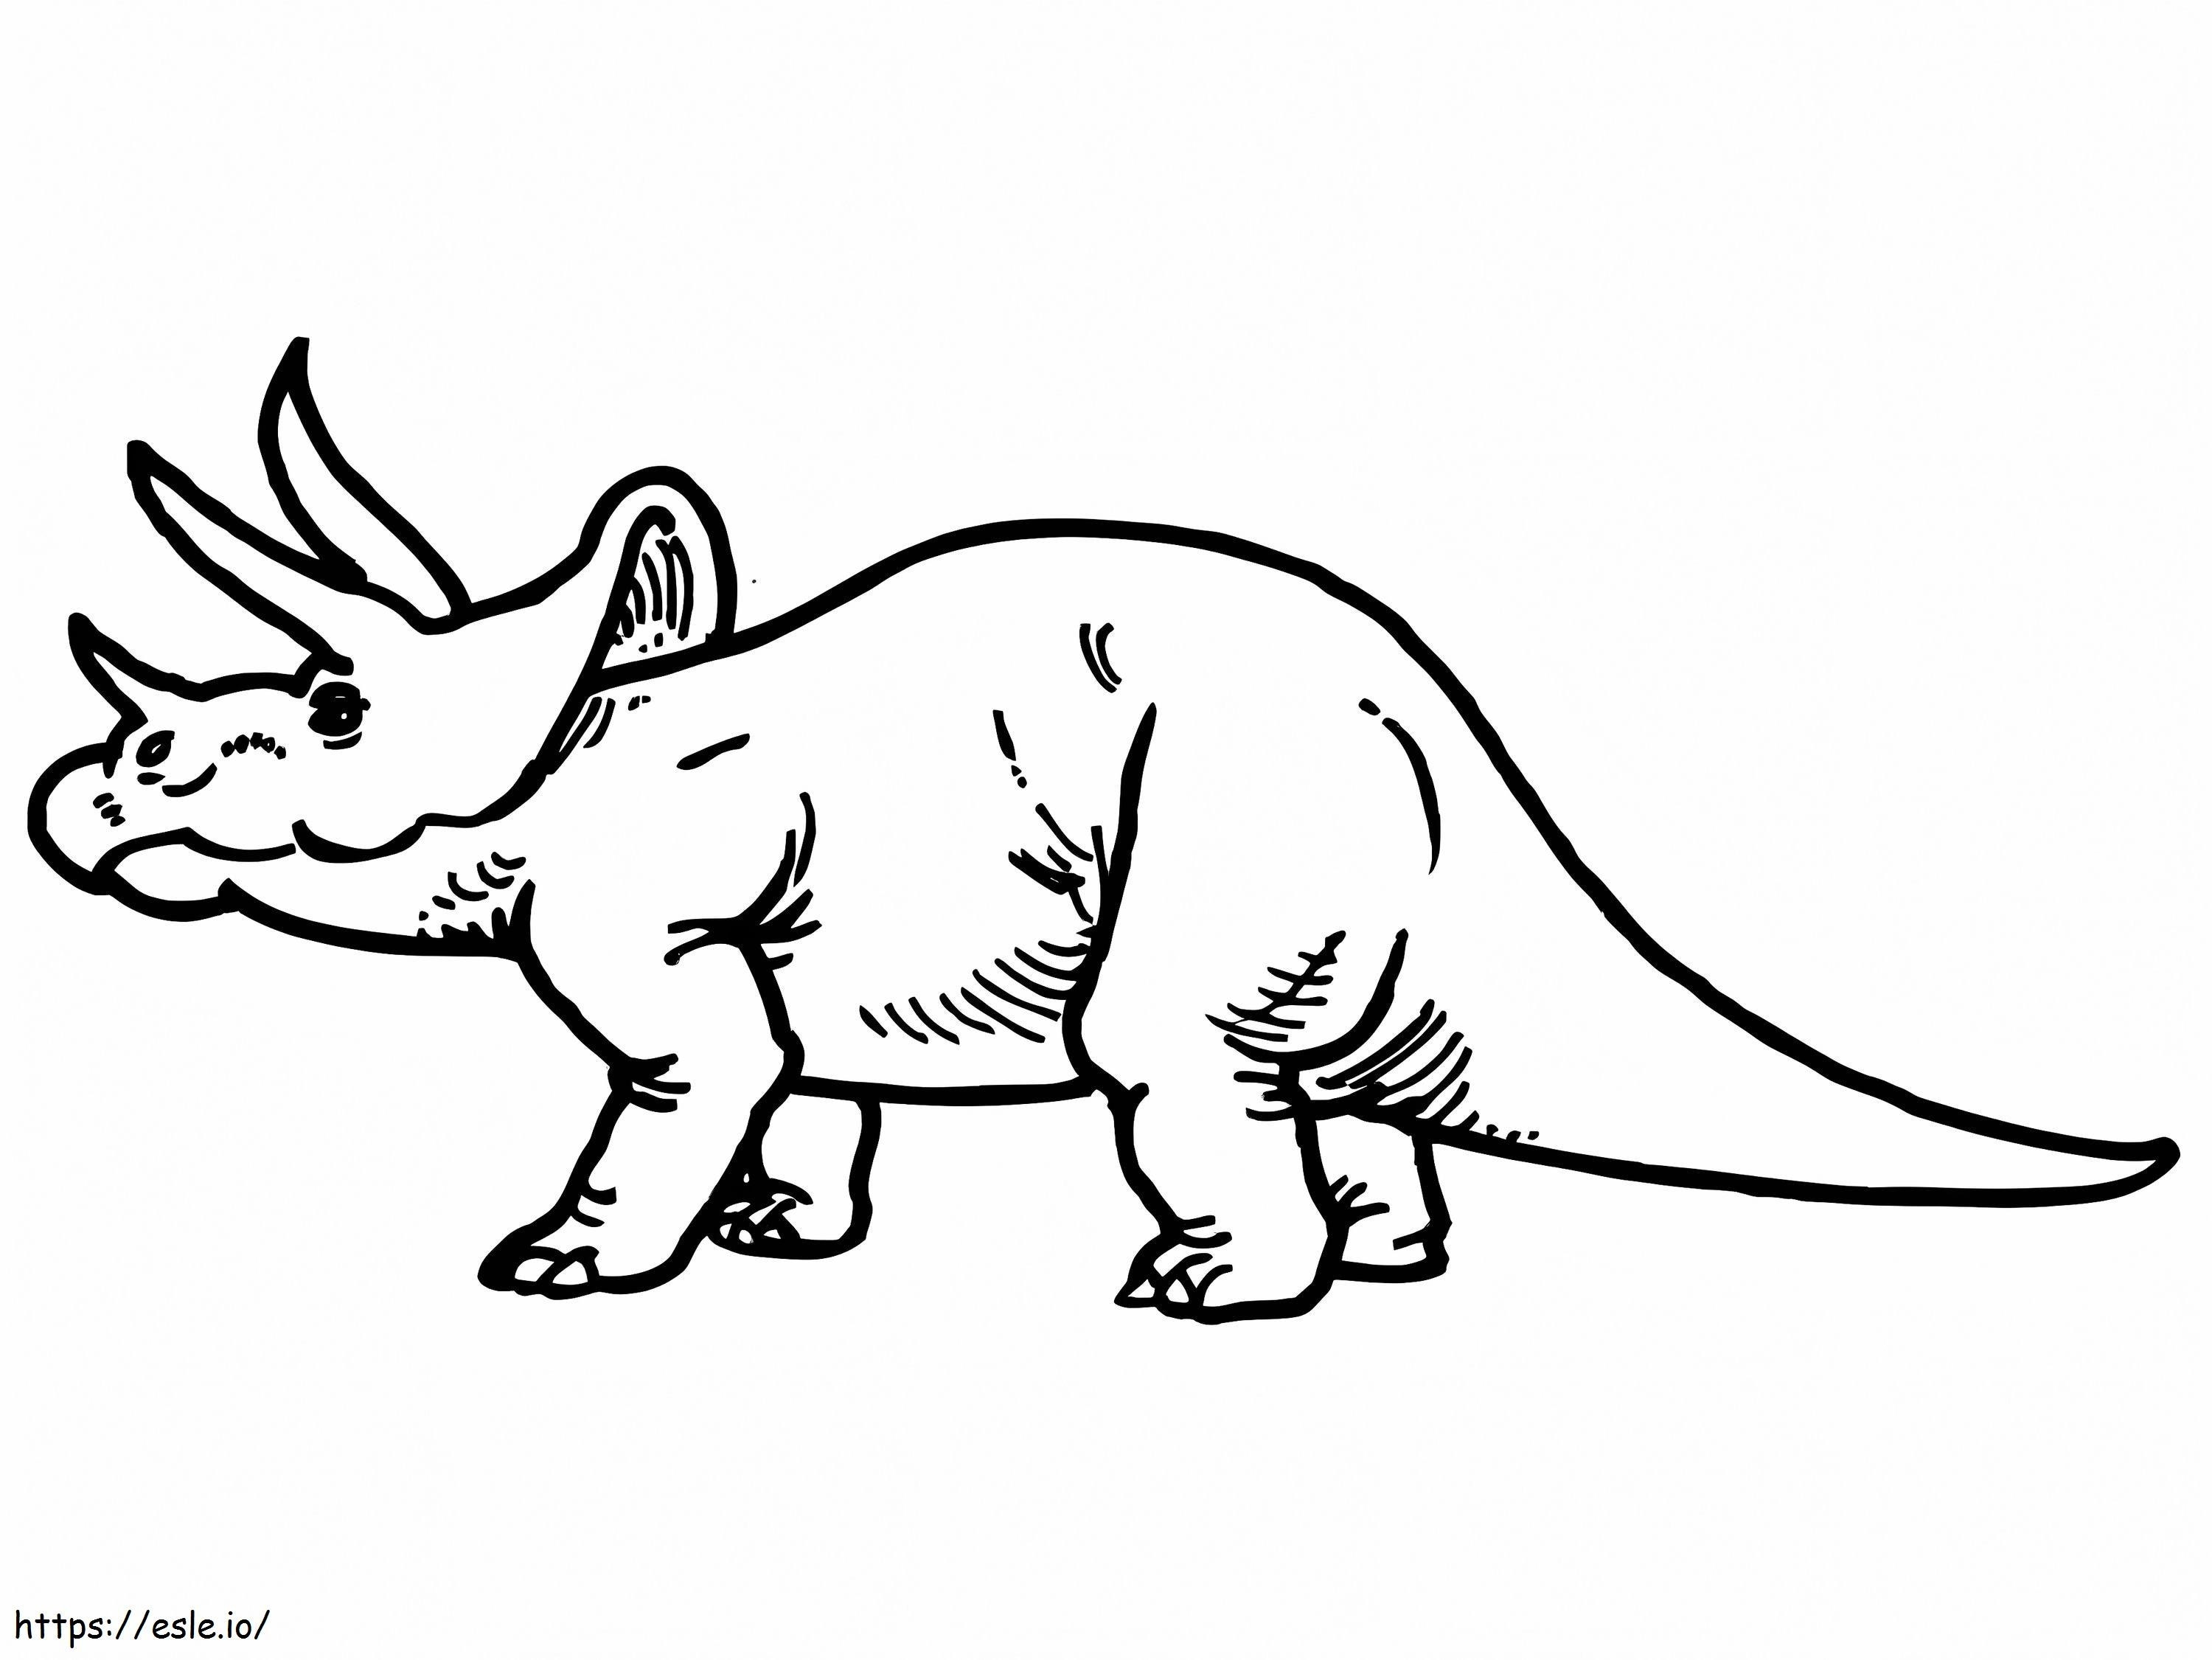 Disegno del triceratopo da colorare